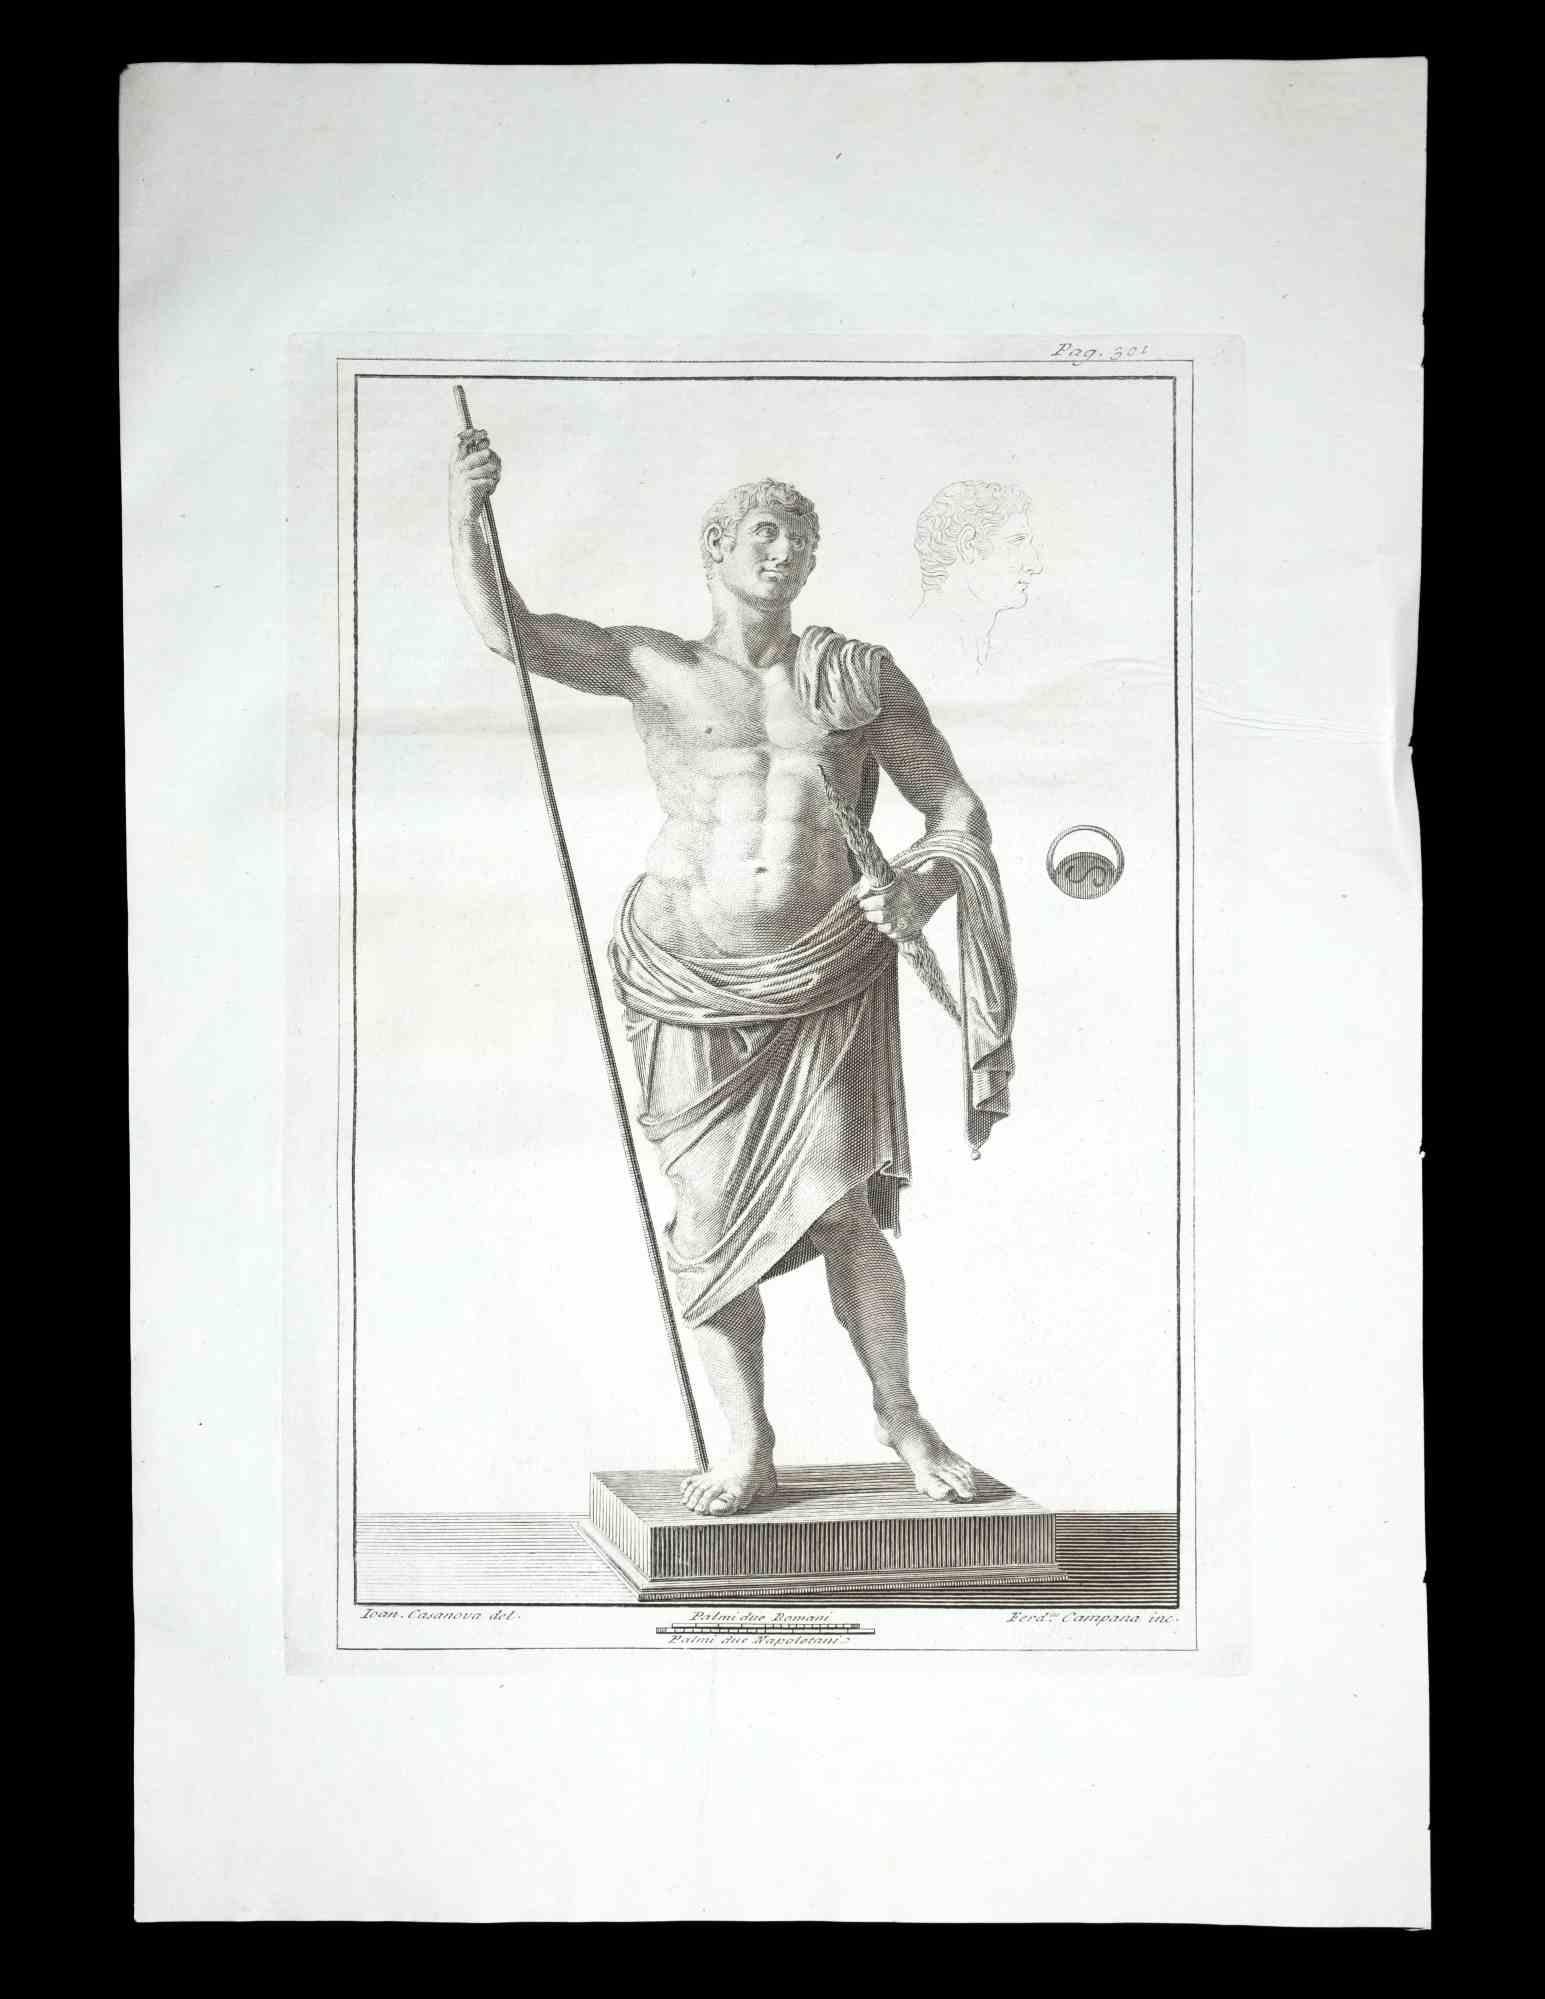 Antike römische Statue, aus der Serie "Antiquitäten von Herculaneum", ist eine Originalradierung auf Papier von Ferdinando Campana aus dem 18.

Signiert auf der Platte, unten rechts.

Guter Zustand mit leichten Faltungen.

Die Radierung gehört zu